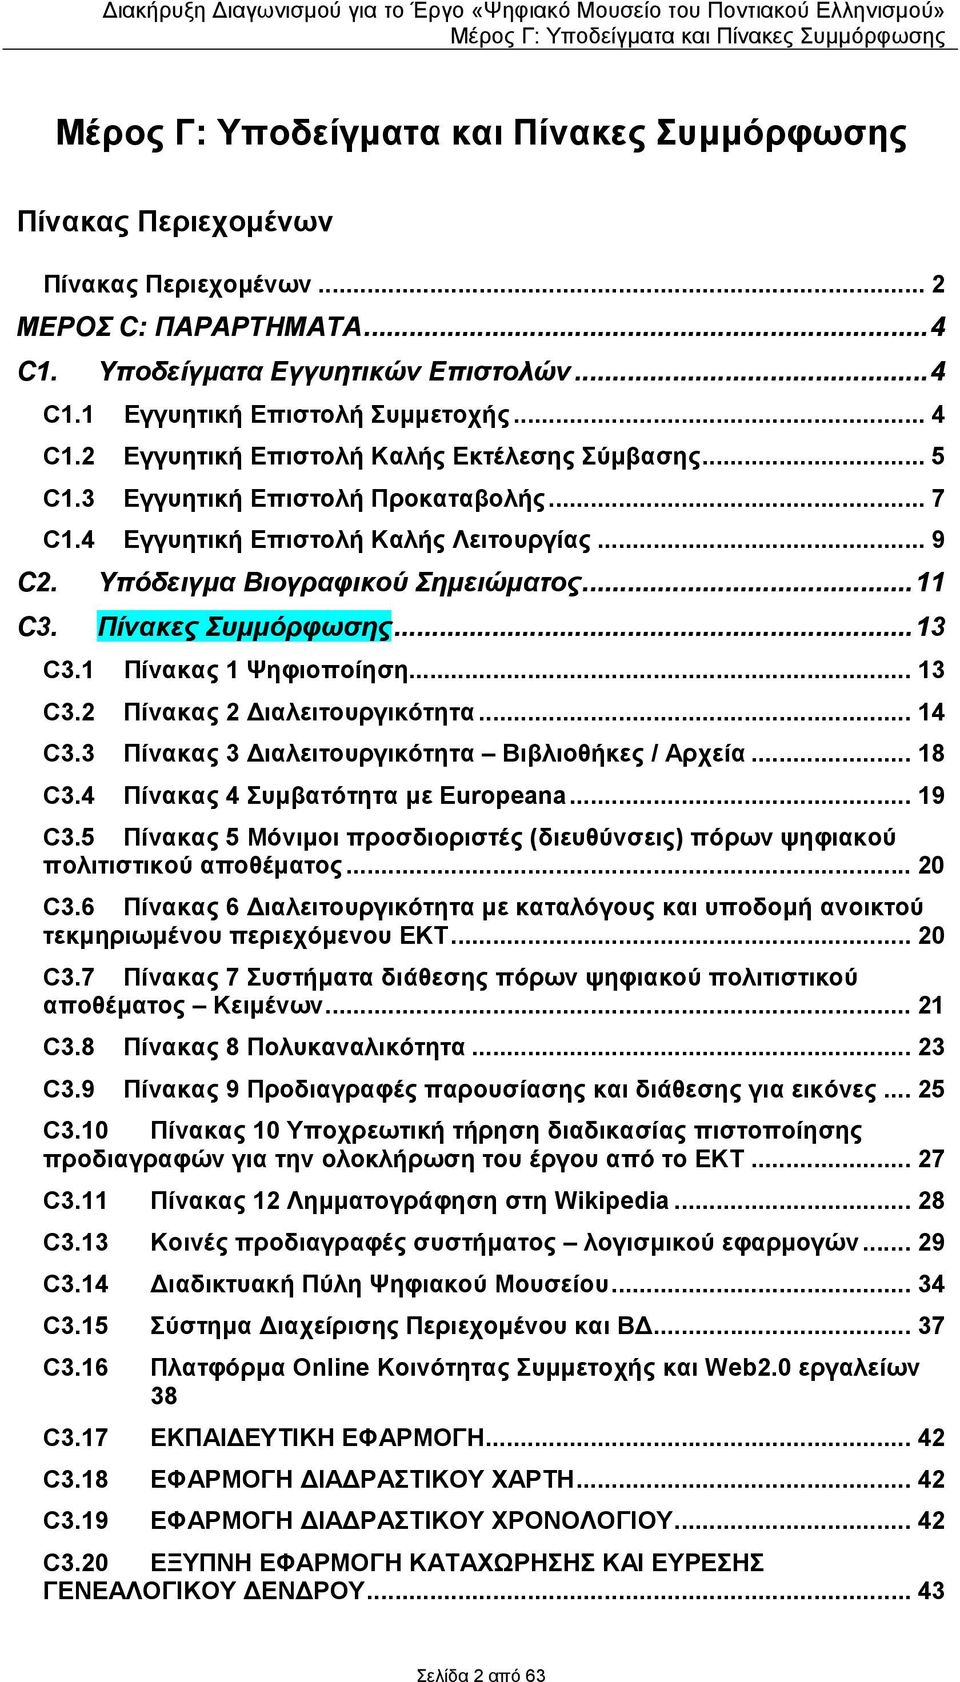 Πίνακες Συµµόρφωσης...13 C3.1 Πίνακας 1 Ψηφιοποίηση... 13 C3.2 Πίνακας 2 ιαλειτουργικότητα... 14 C3.3 Πίνακας 3 ιαλειτουργικότητα Βιβλιοθήκες / Αρχεία... 18 C3.4 Πίνακας 4 Συµβατότητα µε Europeana.